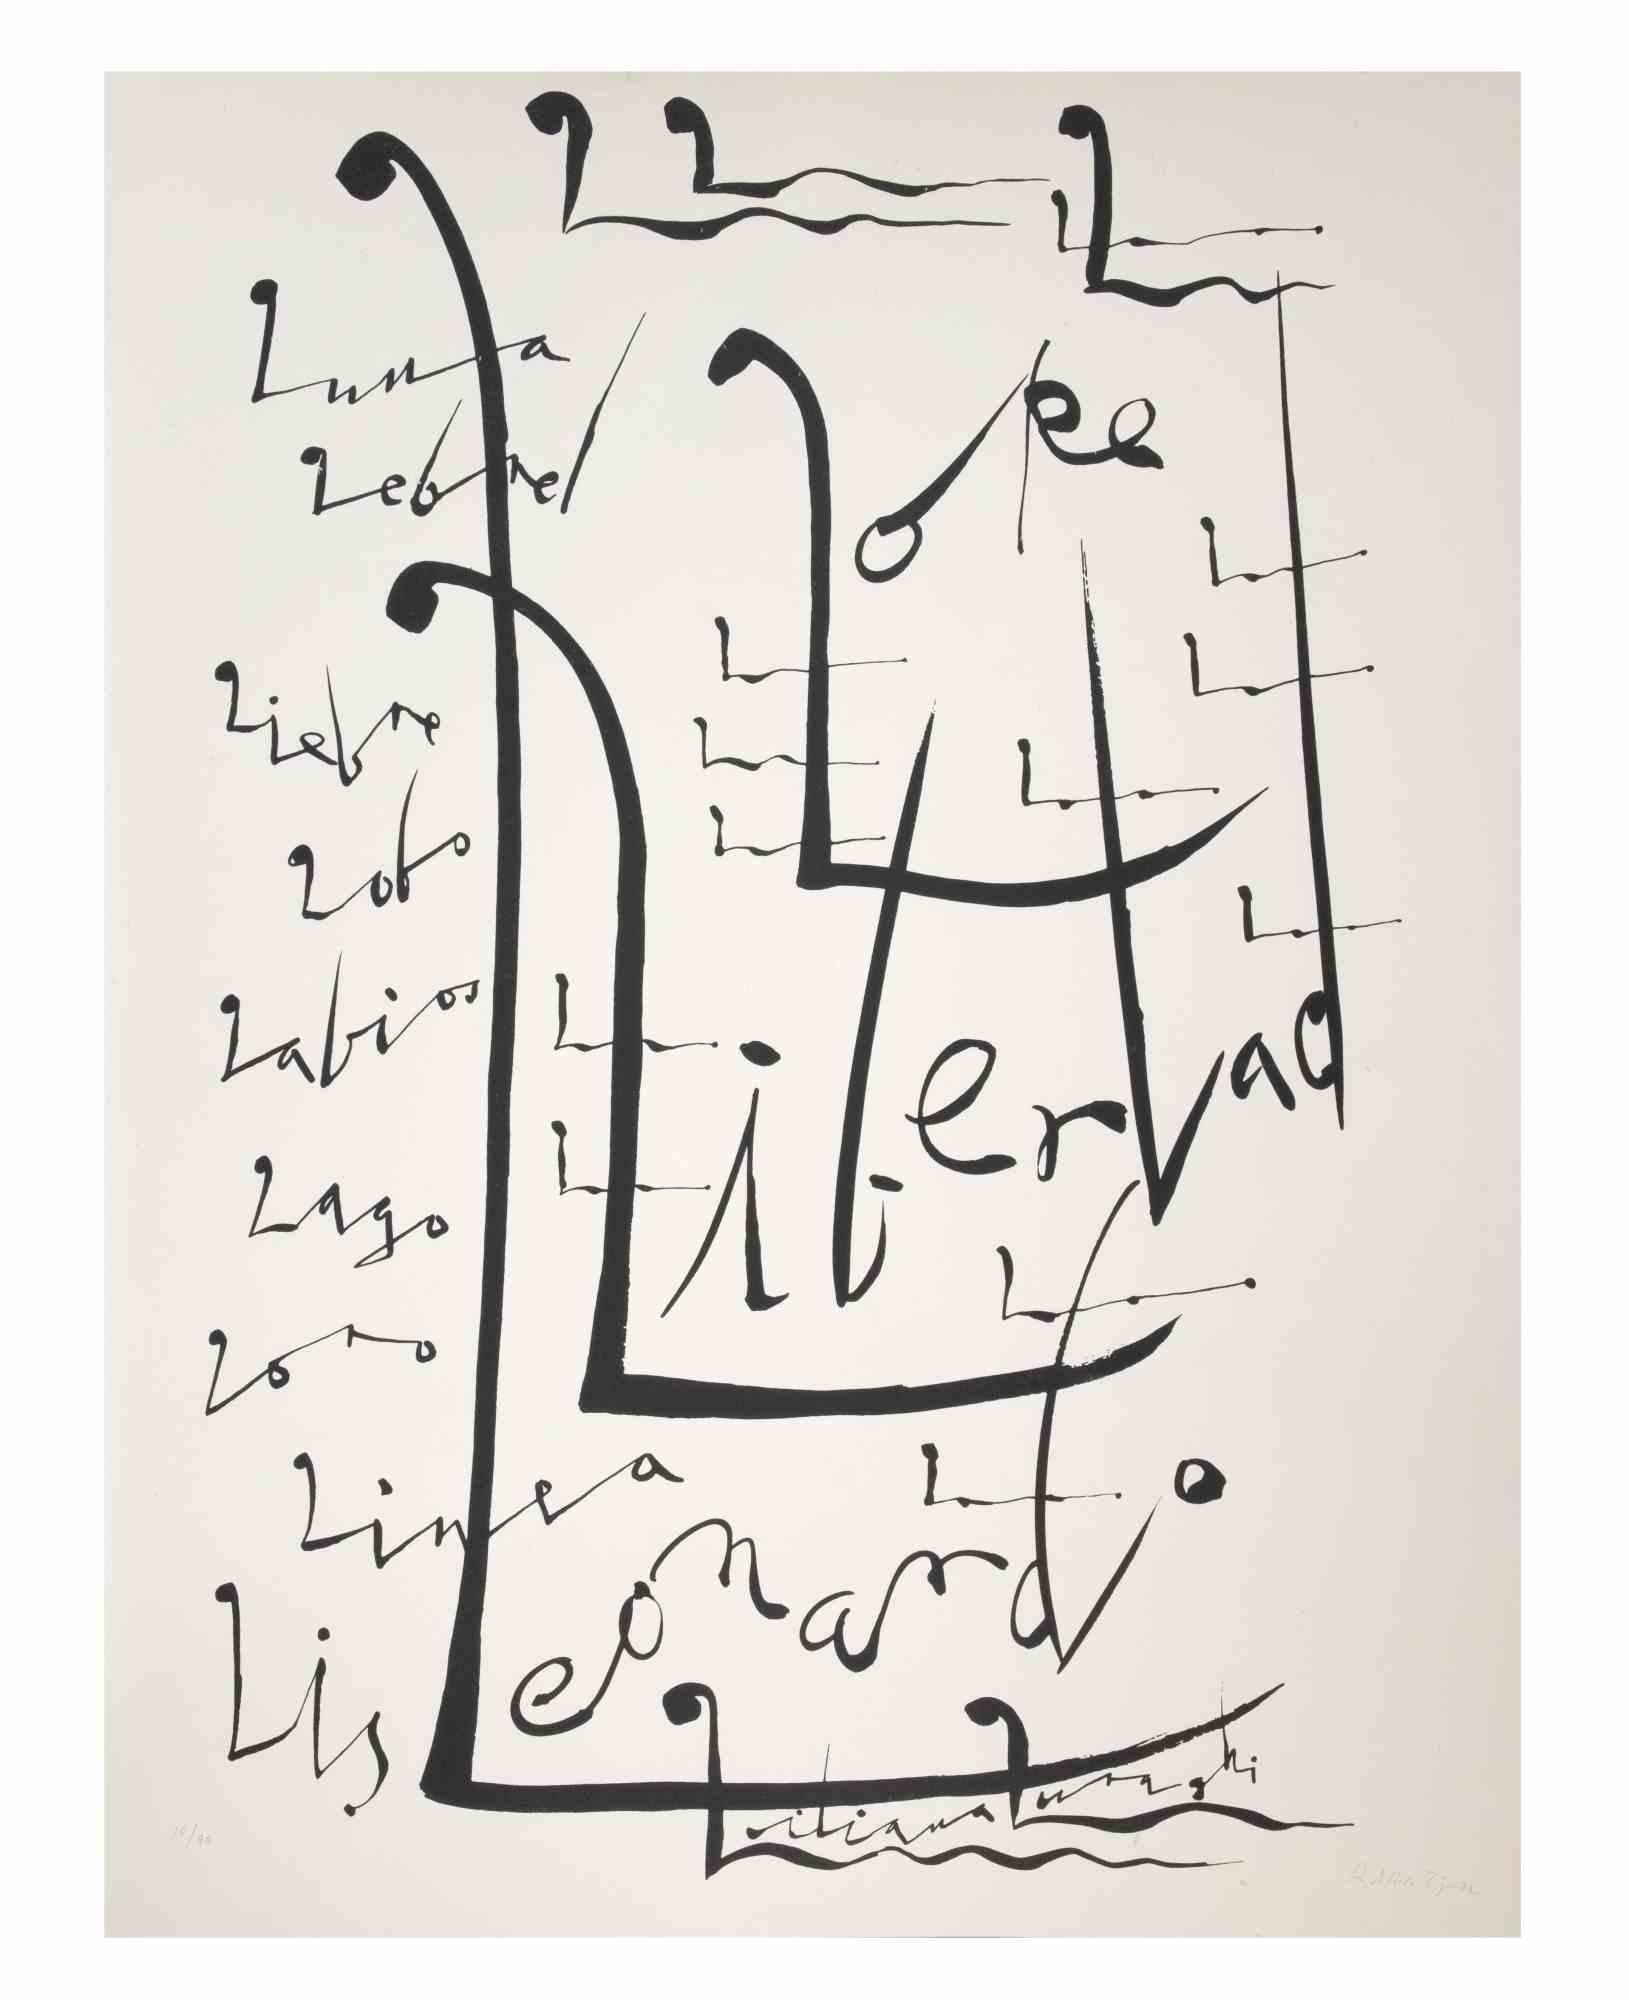 Lettre L - Lithographie de Rafael Alberti - 1972